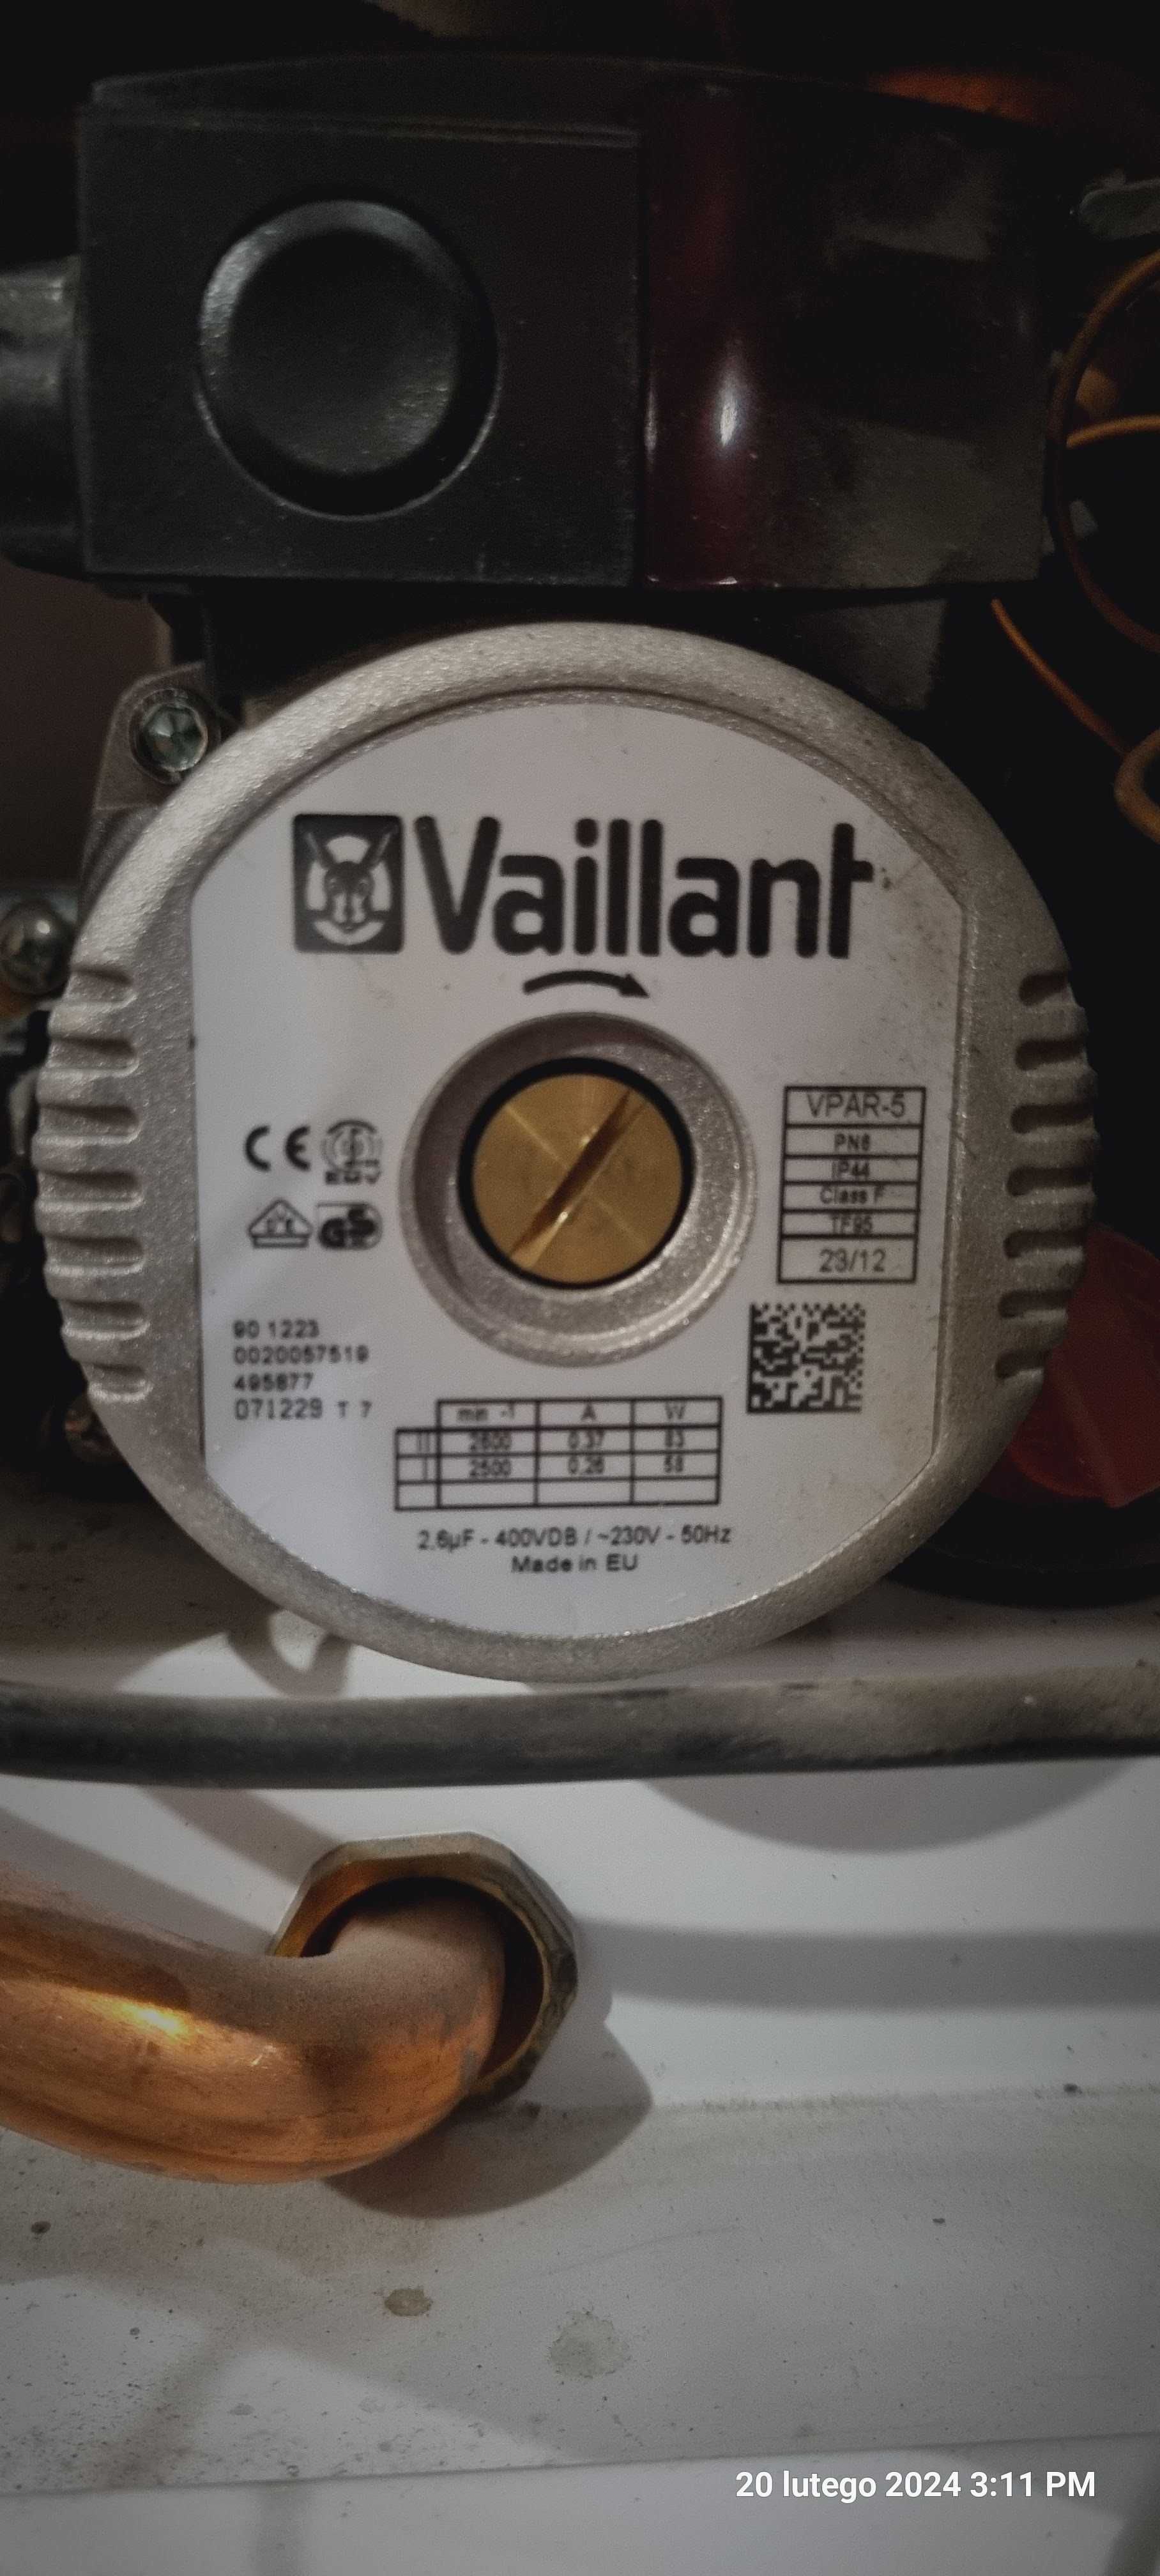 Cześci do Vaillant VCW 246 3-5 R3 2012r używane sprawne